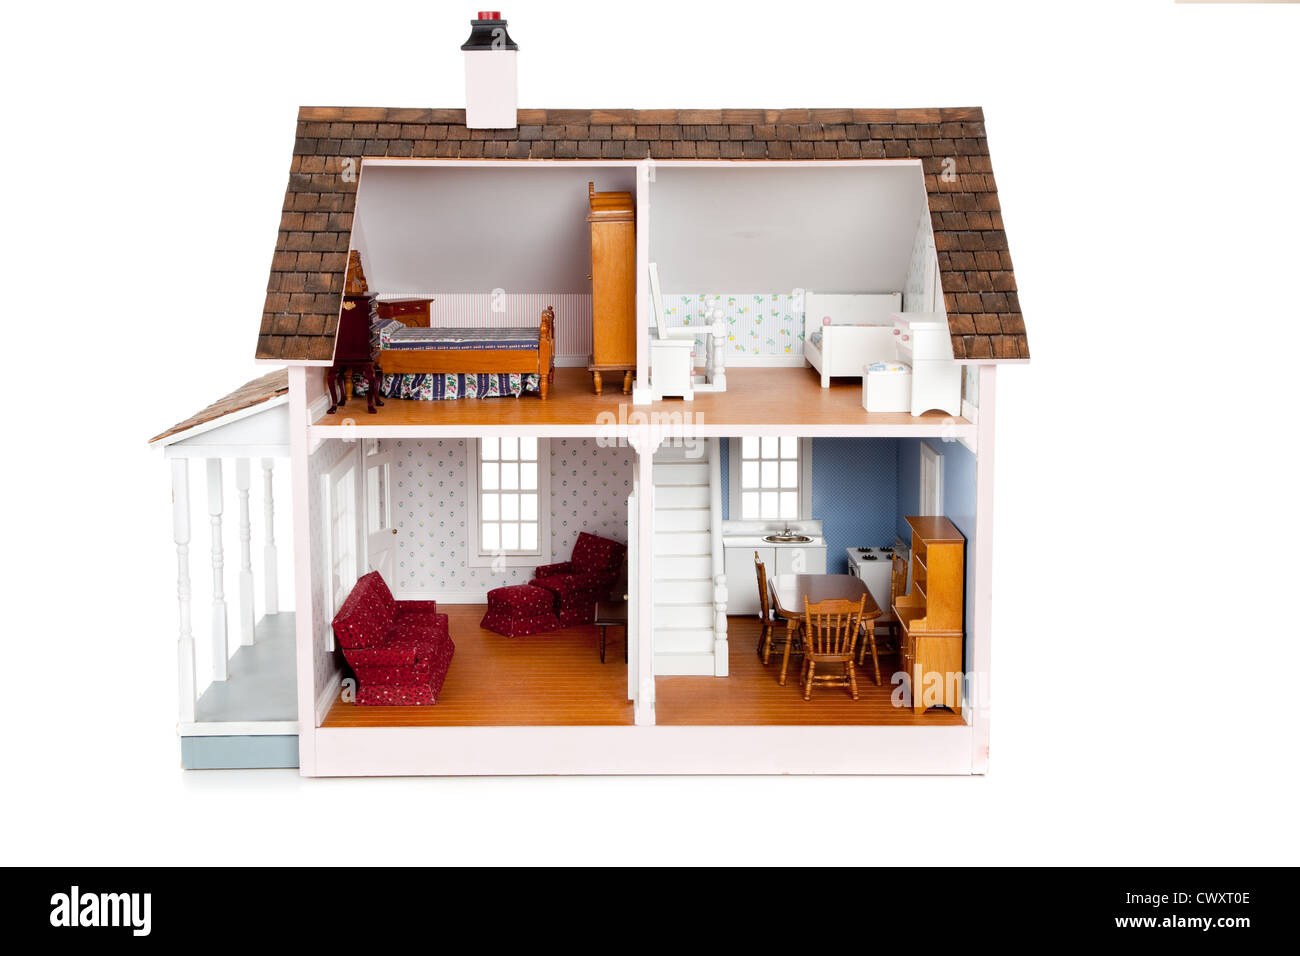 Une maison de poupée en bois sur fond blanc Banque D'Images